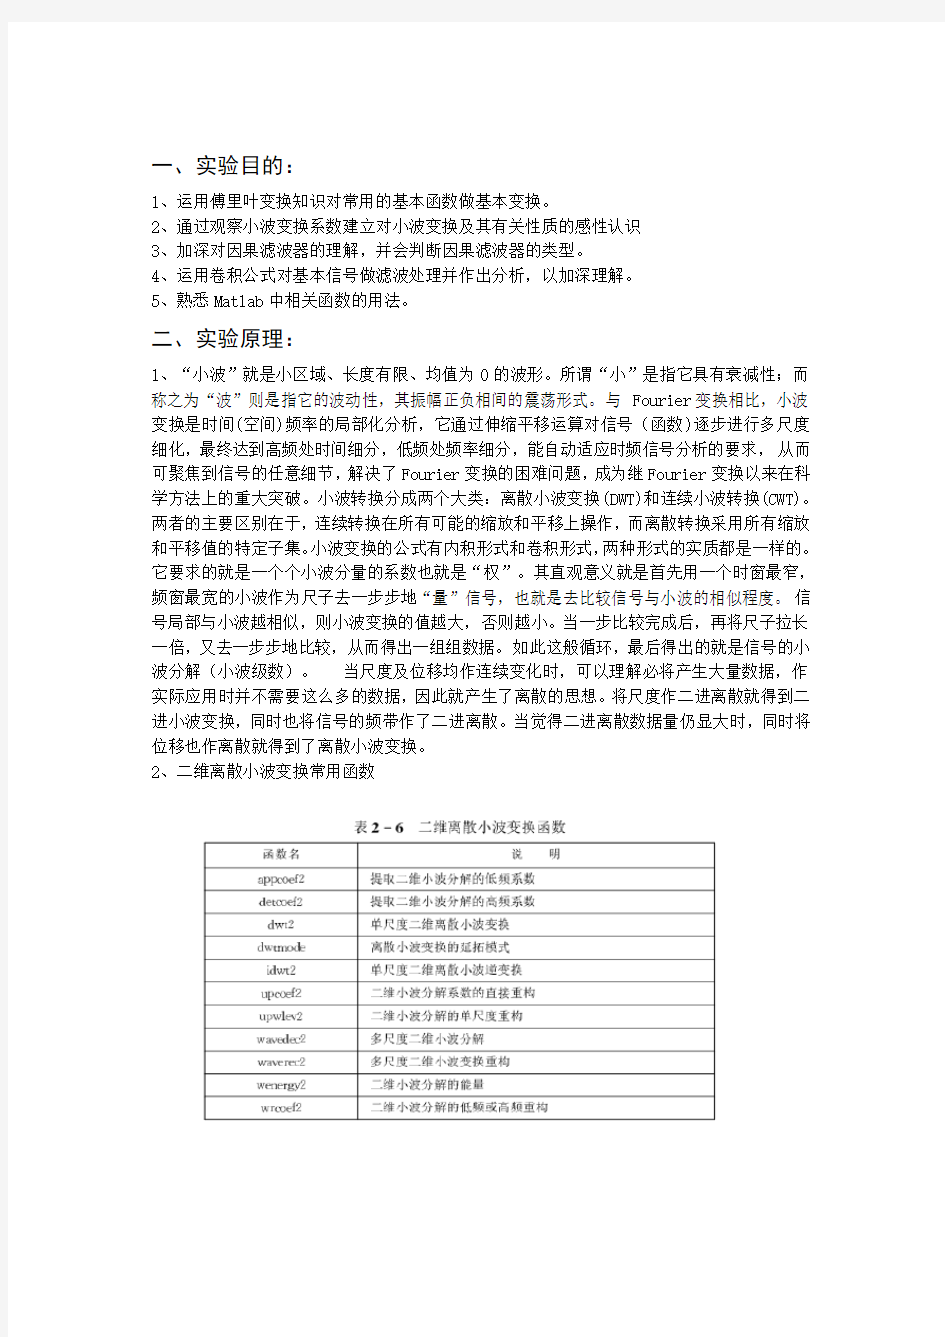 南京理工大学小波分析实验报告